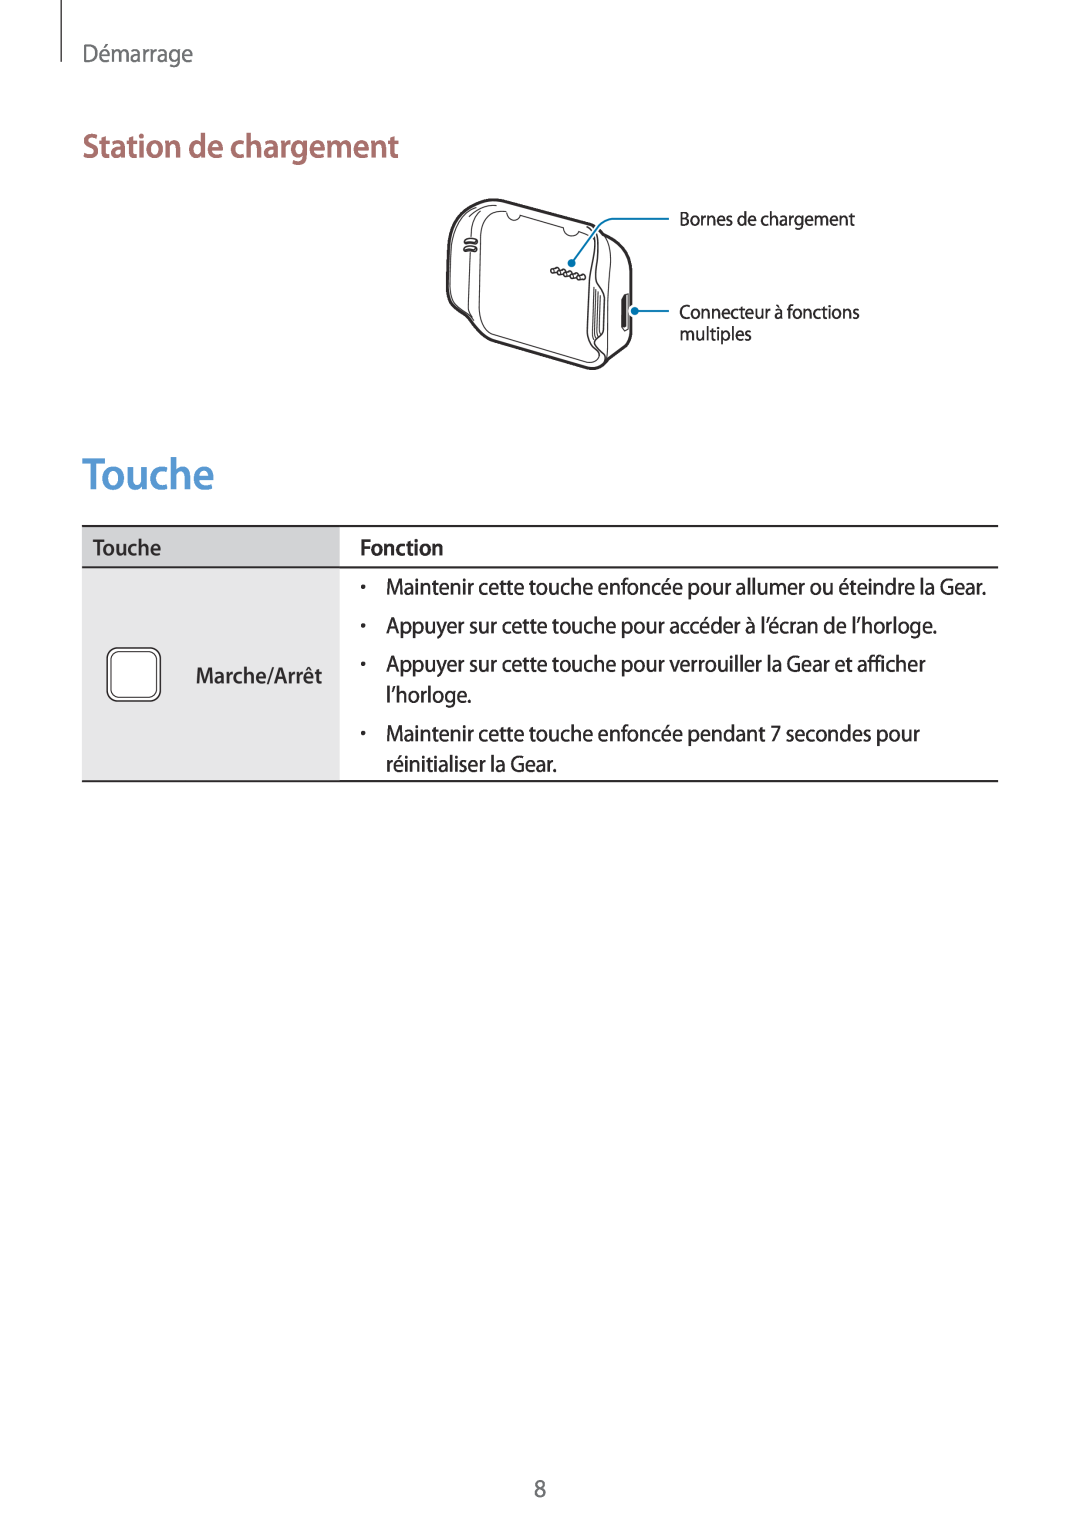 Samsung SM-R3810ZKAXEF Touche, Station de chargement, Démarrage, Bornes de chargement Connecteur à fonctions multiples 